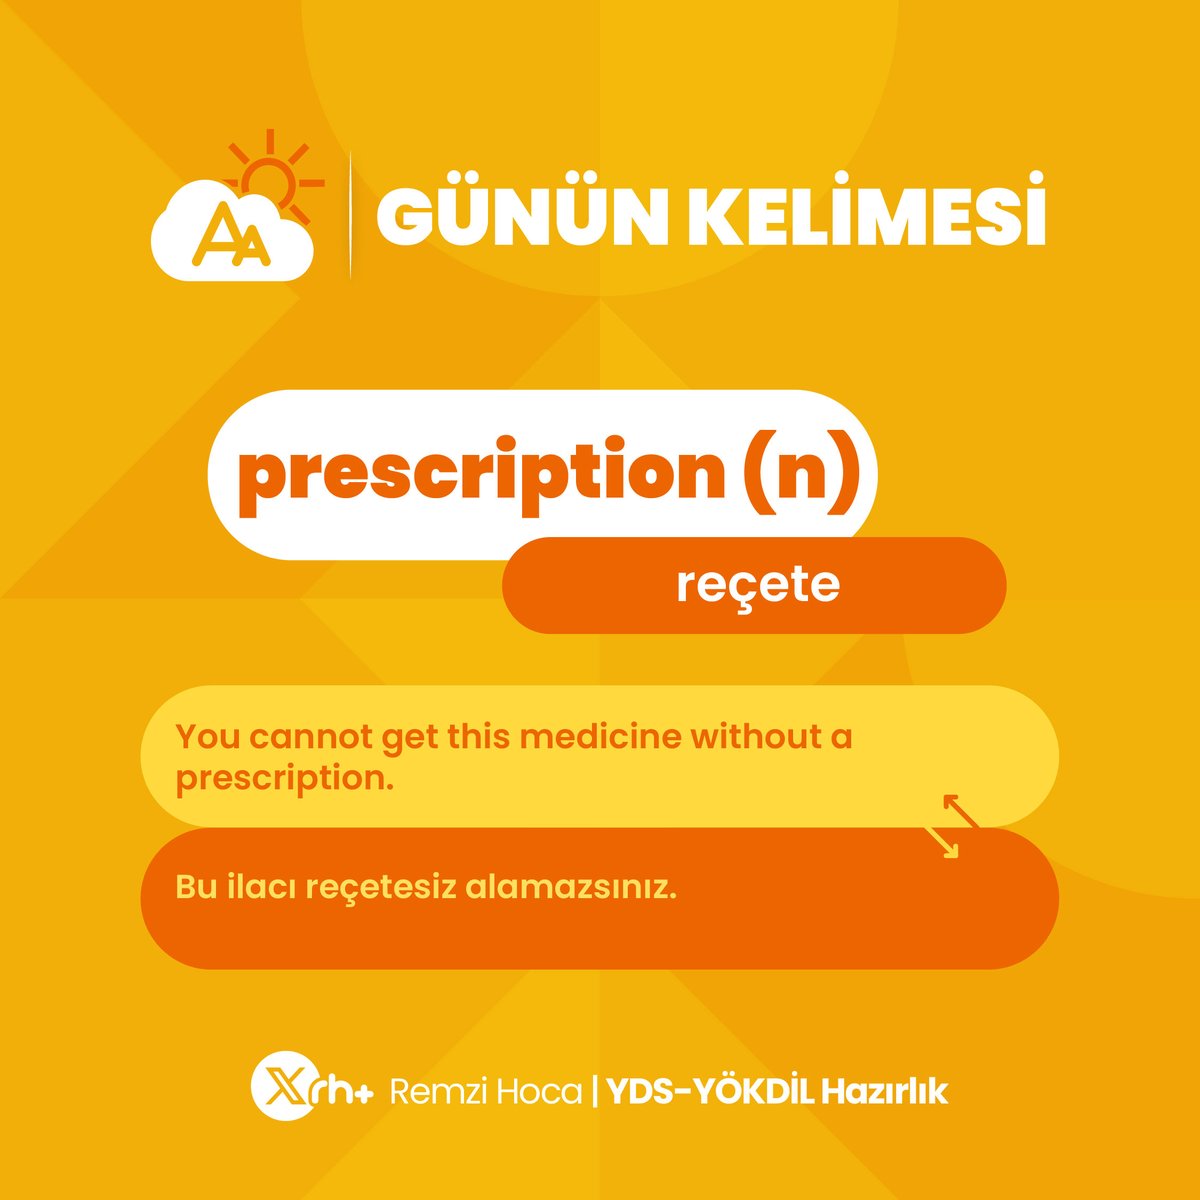 Günaydın! ✨ Günün kelimesi 'prescription' 📌 #vocabulary #ydskelime #yökdilkelime #remzihoca